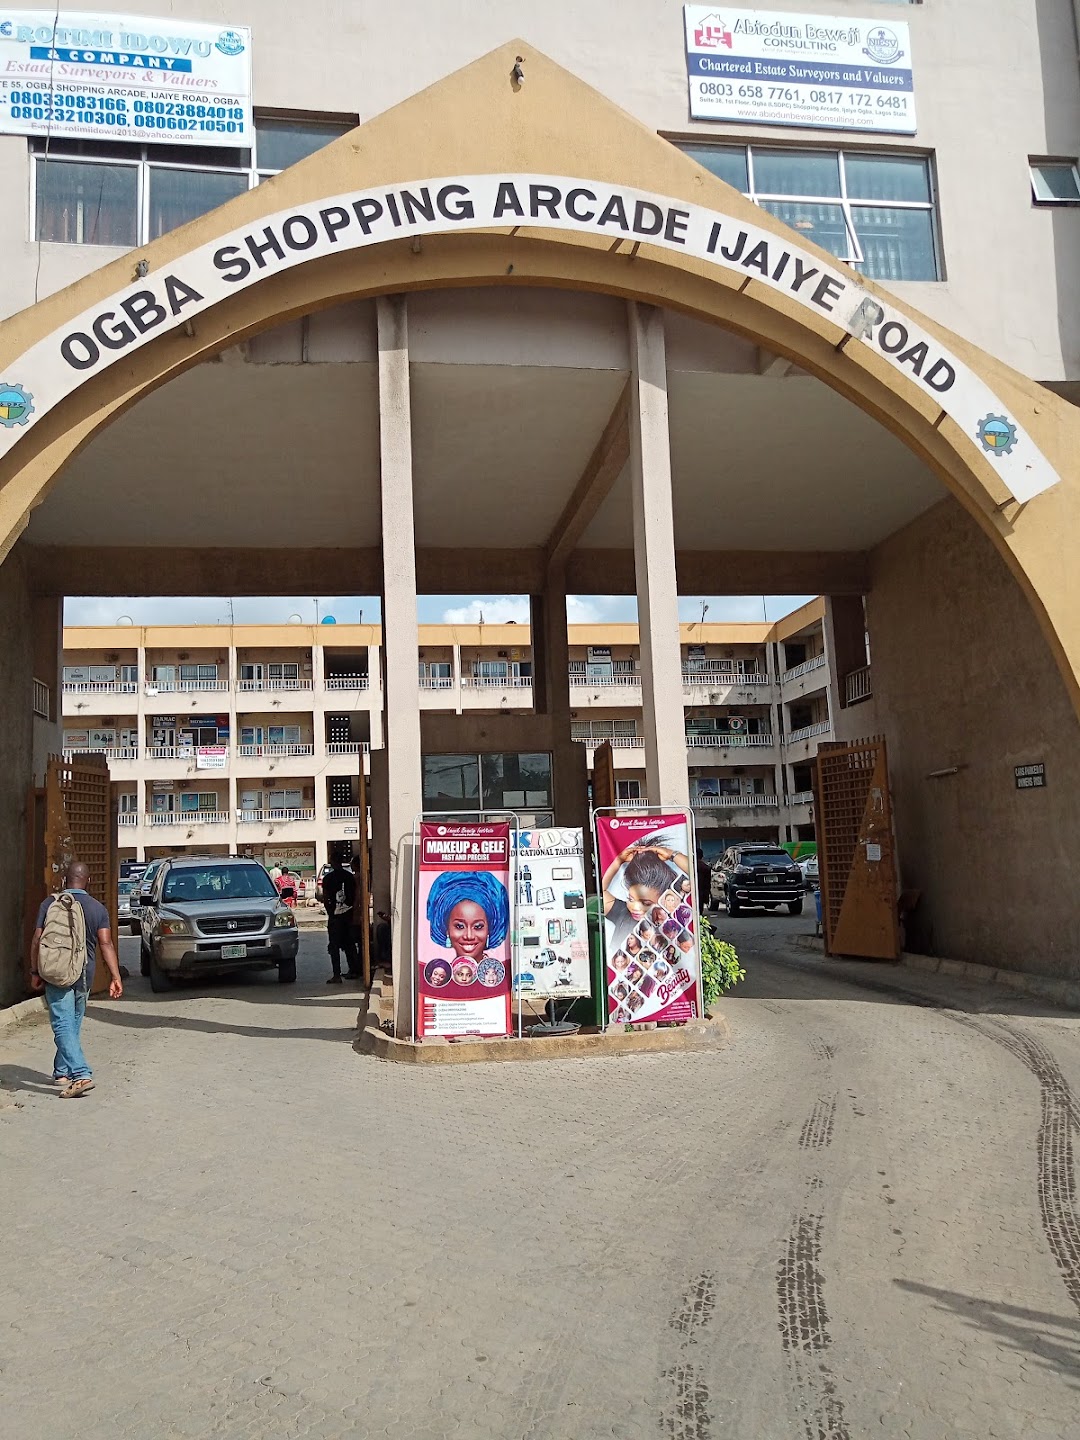 LSDPC Ogba Shopping Arcade